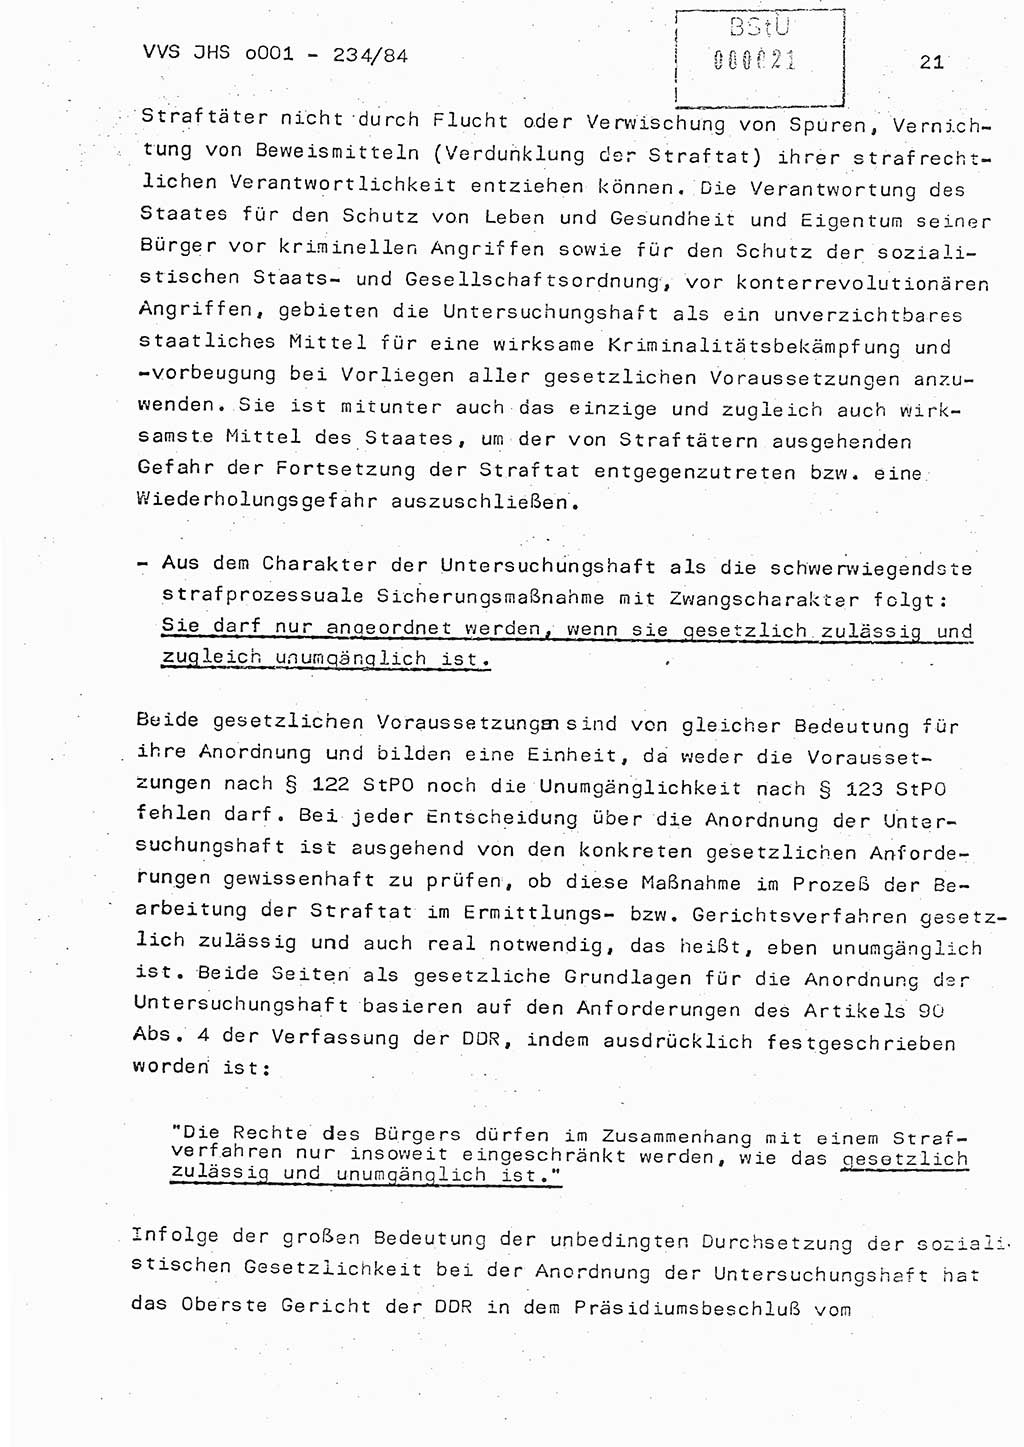 Dissertation Oberst Siegfried Rataizick (Abt. ⅩⅣ), Oberstleutnant Volkmar Heinz (Abt. ⅩⅣ), Oberstleutnant Werner Stein (HA Ⅸ), Hauptmann Heinz Conrad (JHS), Ministerium für Staatssicherheit (MfS) [Deutsche Demokratische Republik (DDR)], Juristische Hochschule (JHS), Vertrauliche Verschlußsache (VVS) o001-234/84, Potsdam 1984, Seite 21 (Diss. MfS DDR JHS VVS o001-234/84 1984, S. 21)